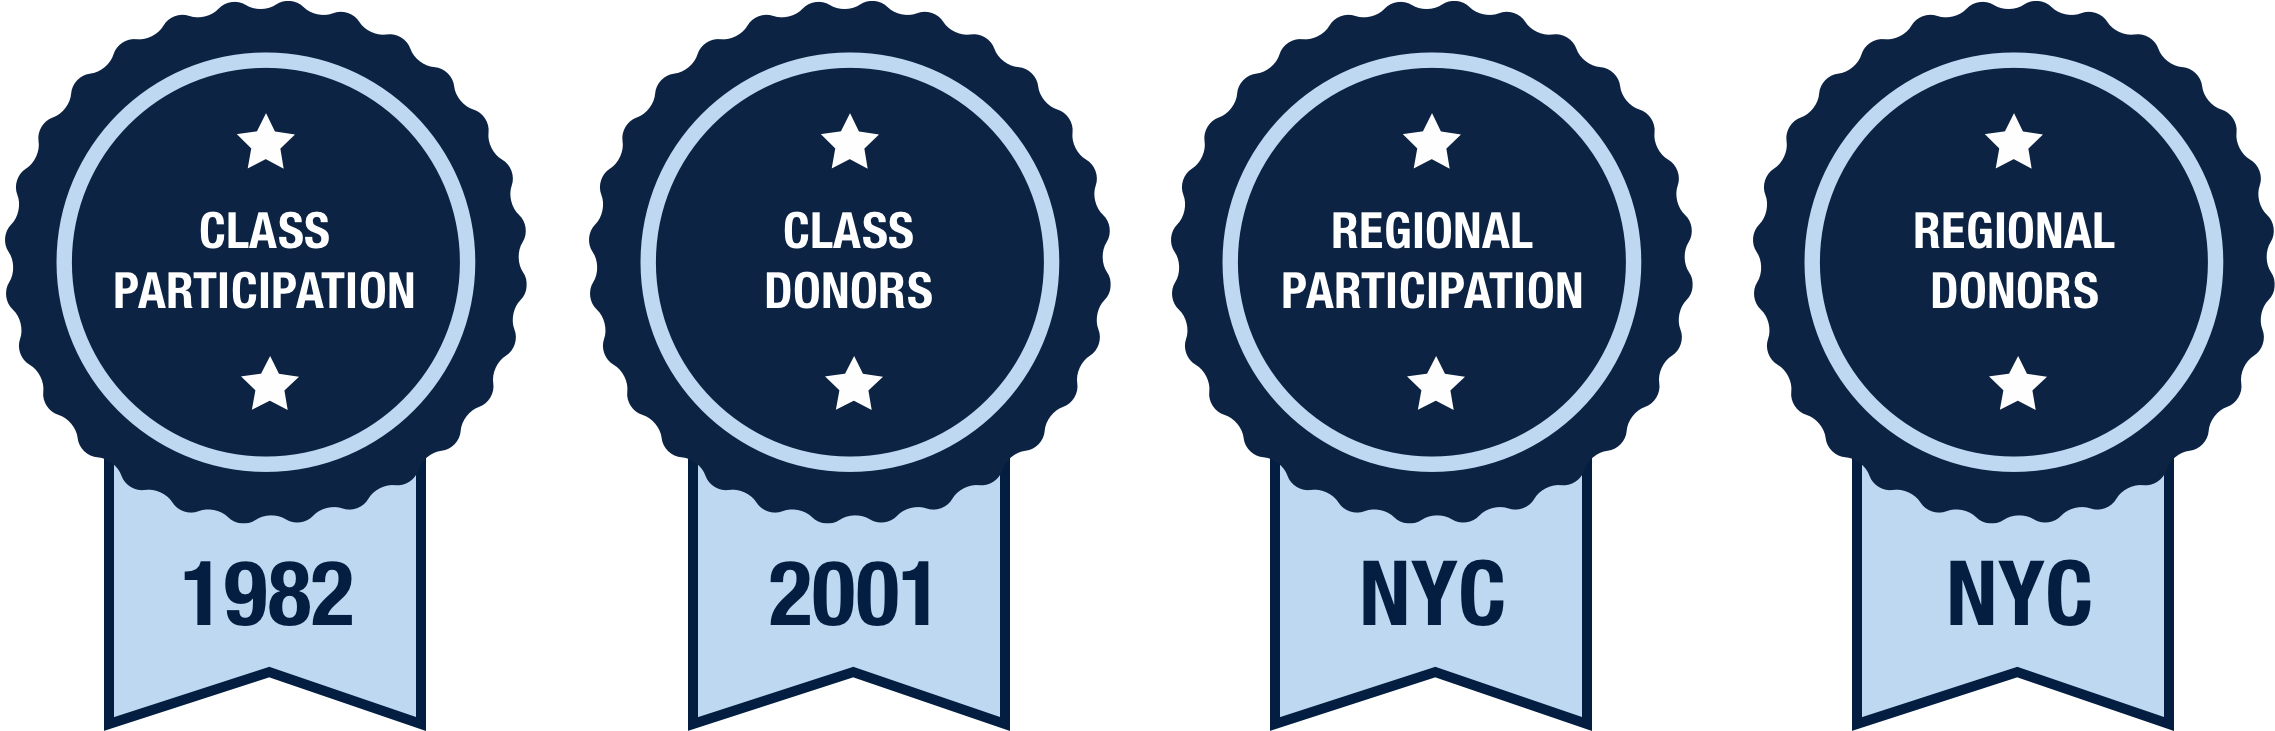 class participation winner: 1982 class donor winner: 2001 region participation winner: new york region donor winner: new york